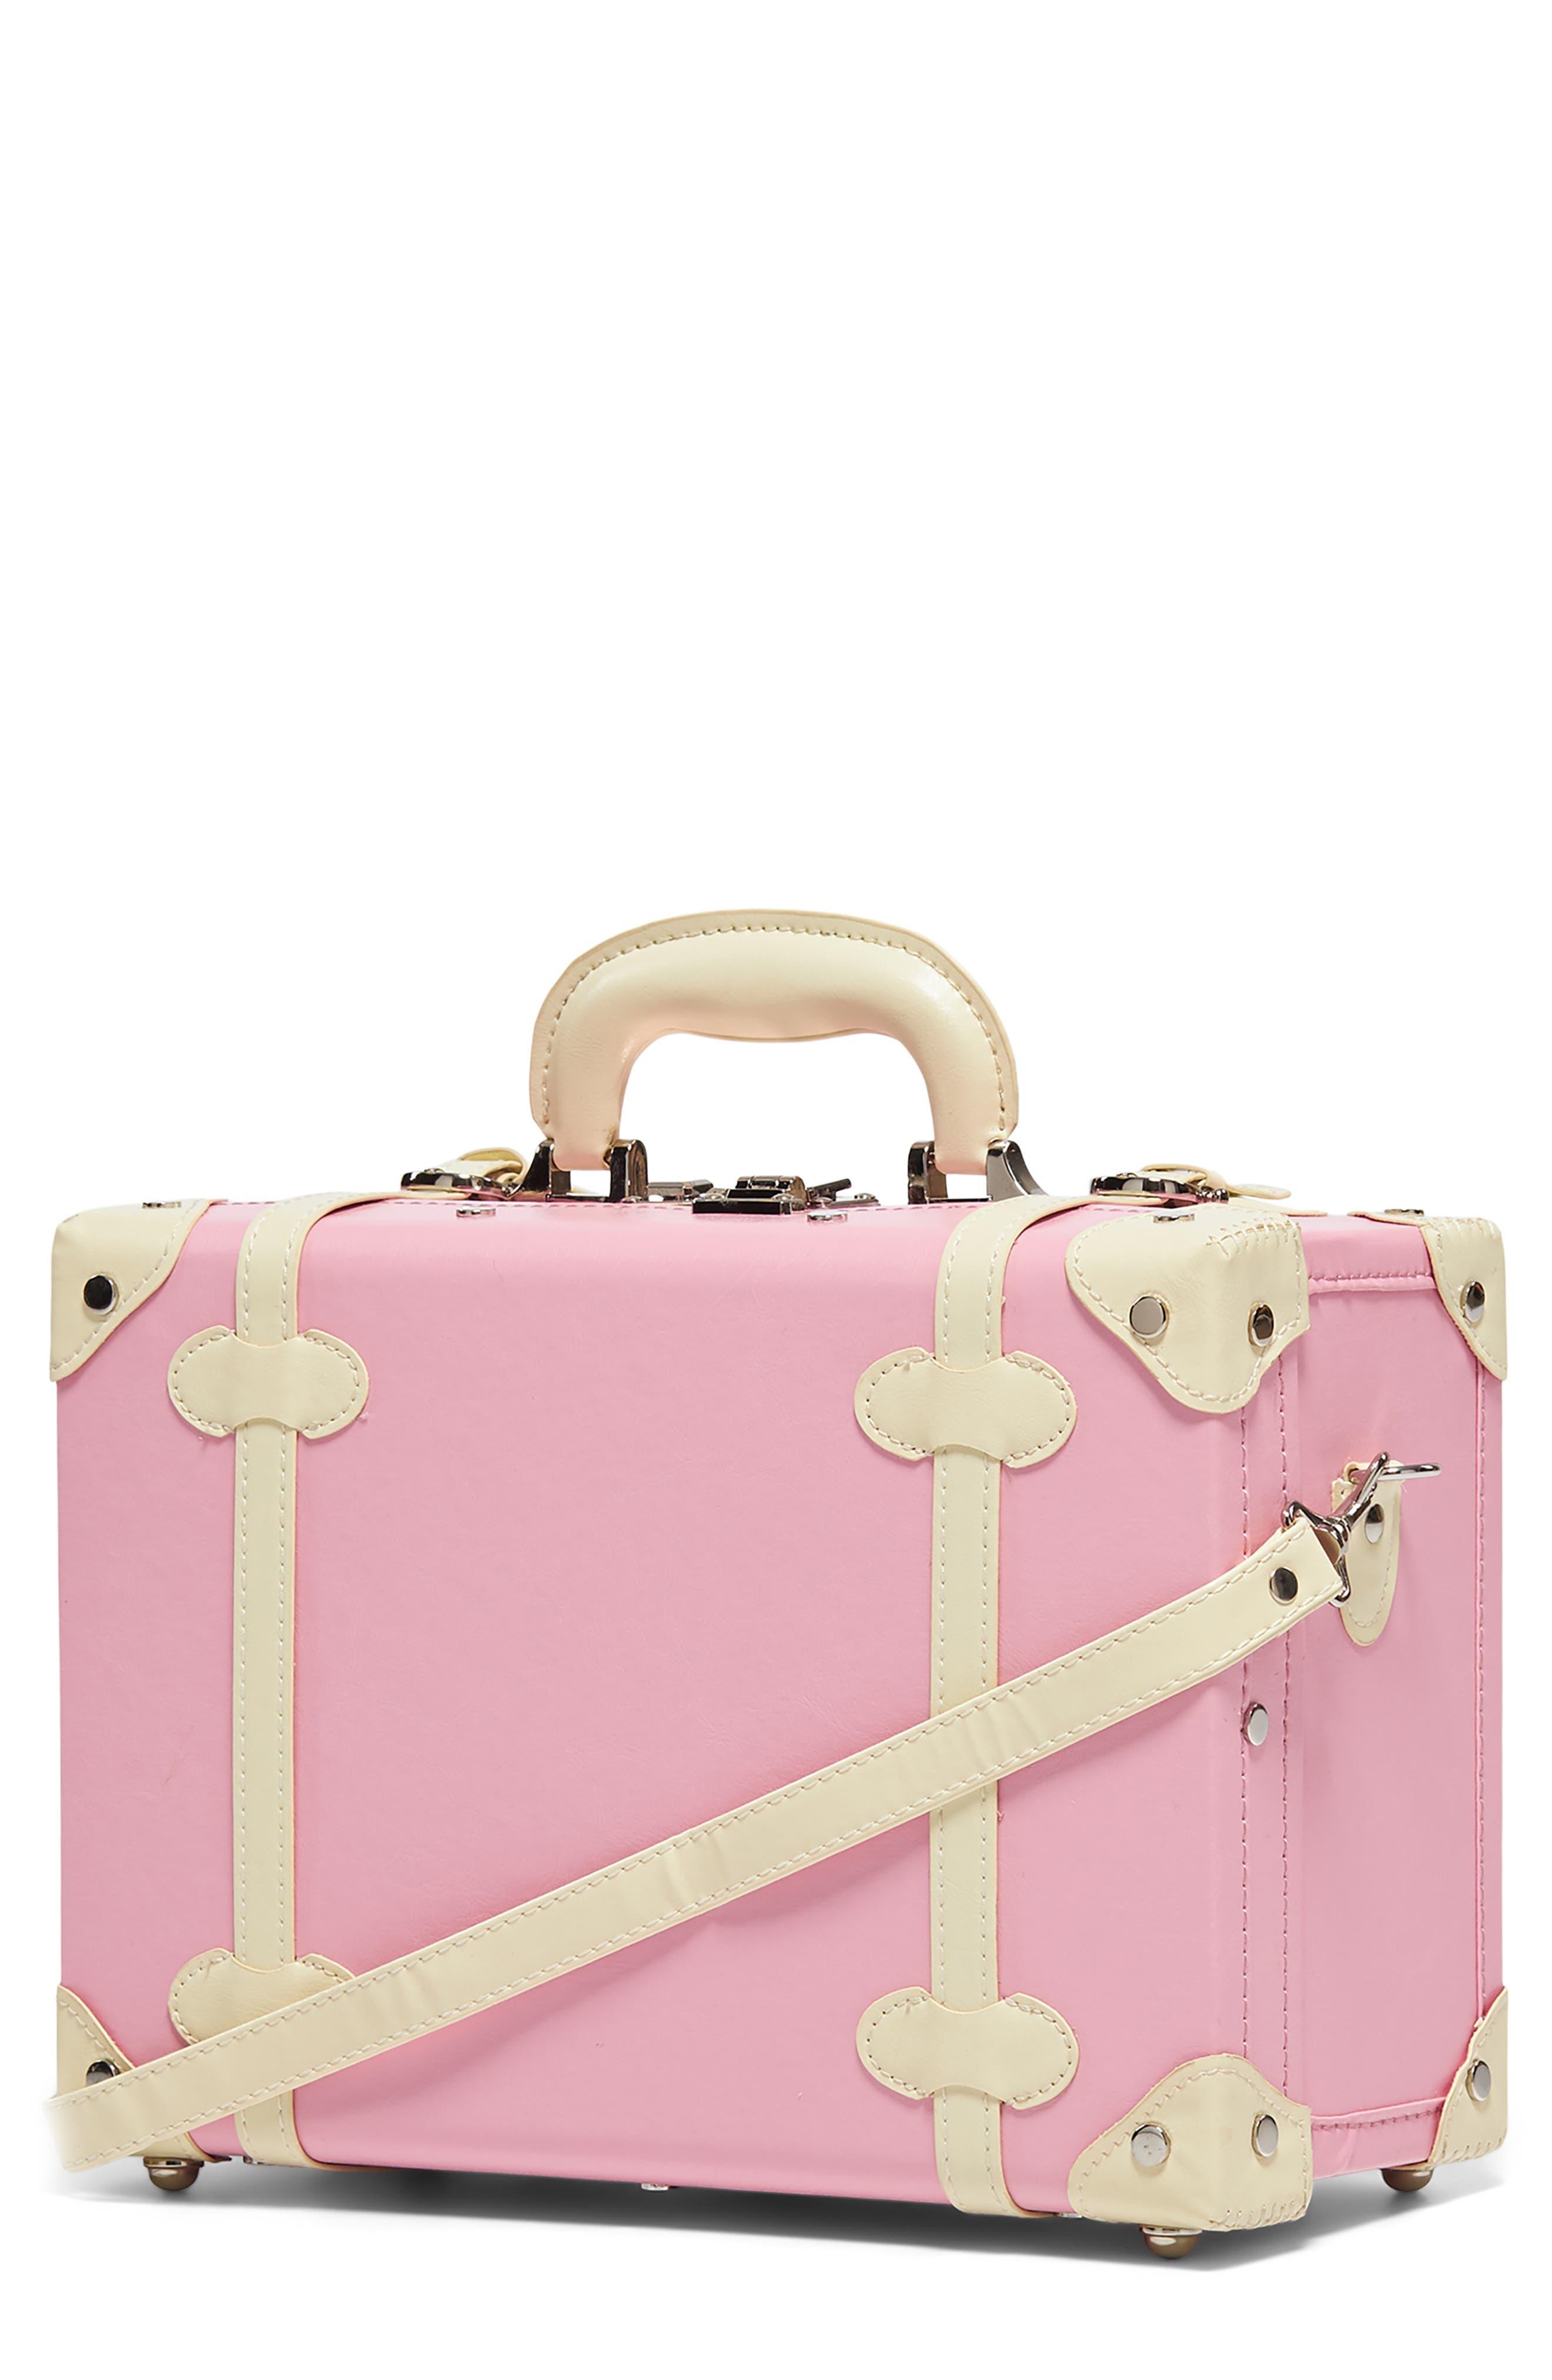 louis vuitton luggage pink